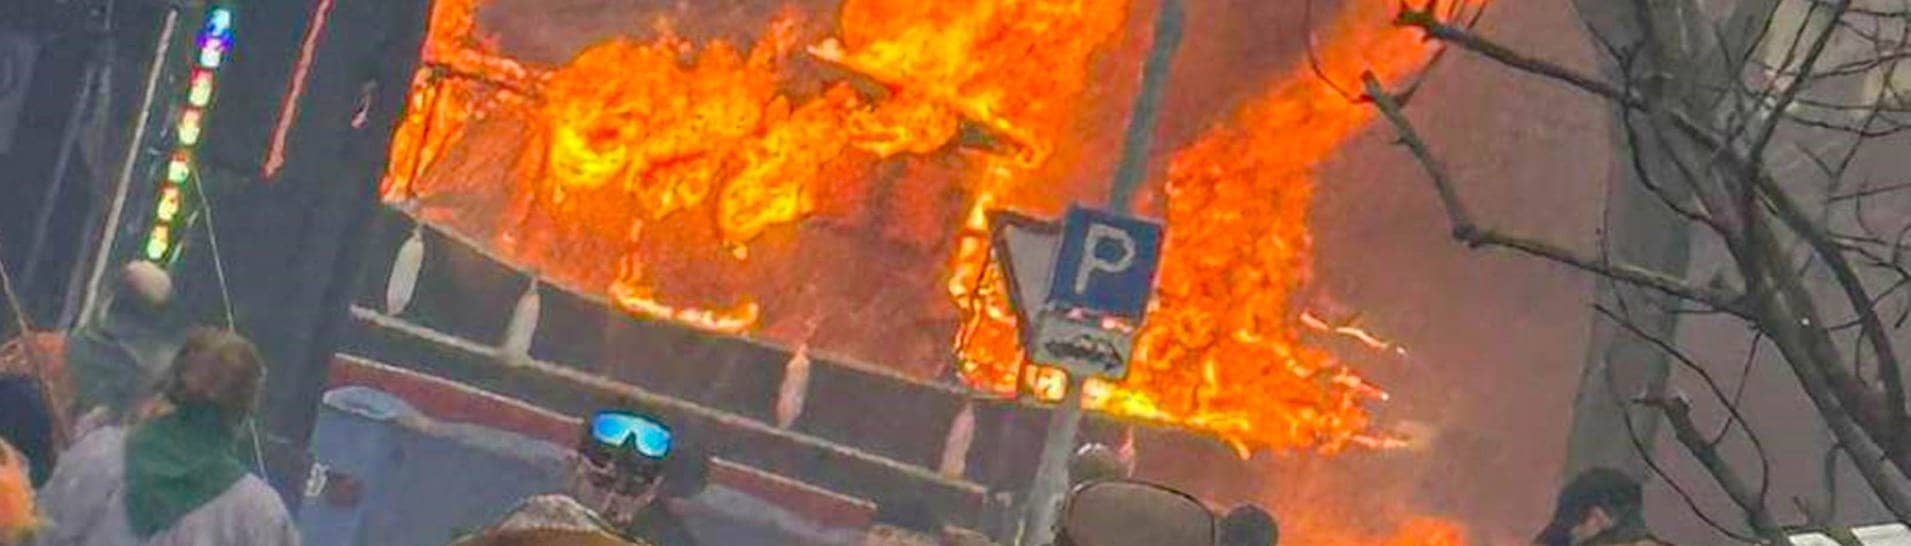 Ein Faschingswagen steht brennend auf einer Straße. Bei einem Faschingsumzug im baden-württembergischen Kehl ist am Sonntag ein Faschingswagen in Brand geraten.